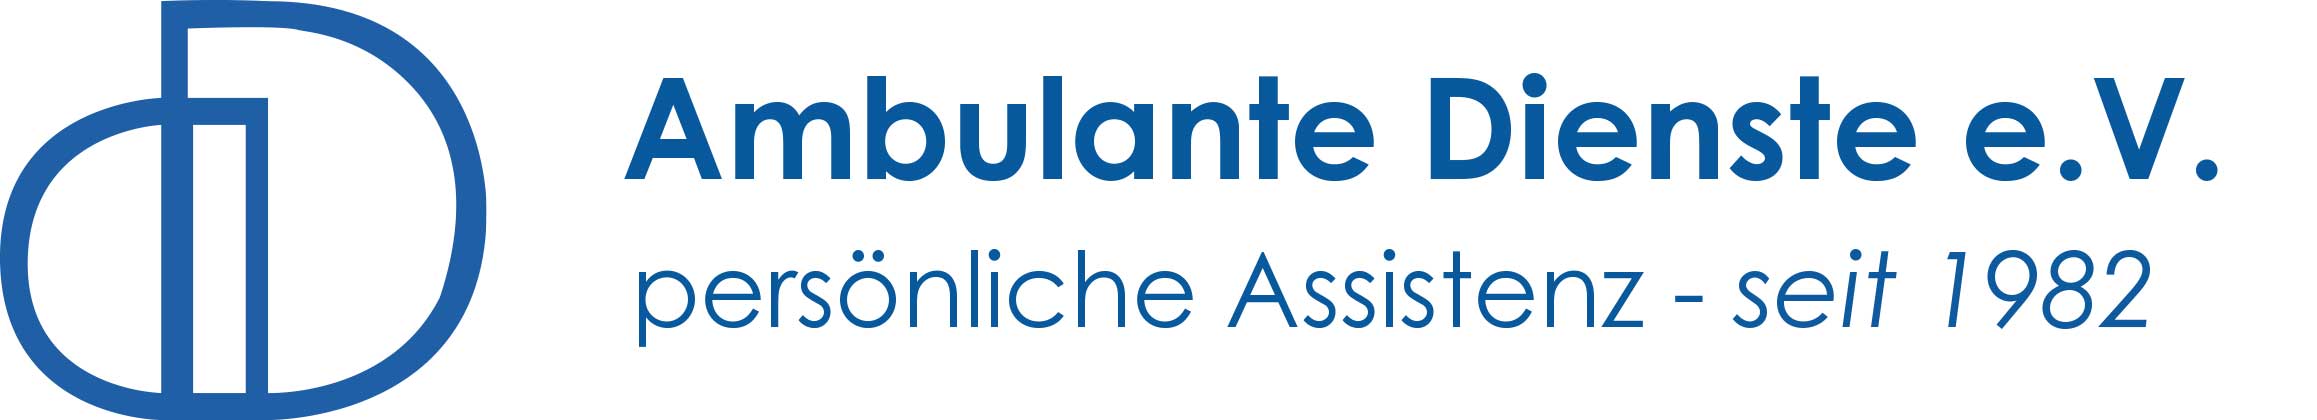 Ambulante-Dienste-eV-Muenster Logo von 'ambulante dienste e.v.' mit dem Text „persönliche assistenz – seit 1982“ neben einem stilisierten blauen Symbol.